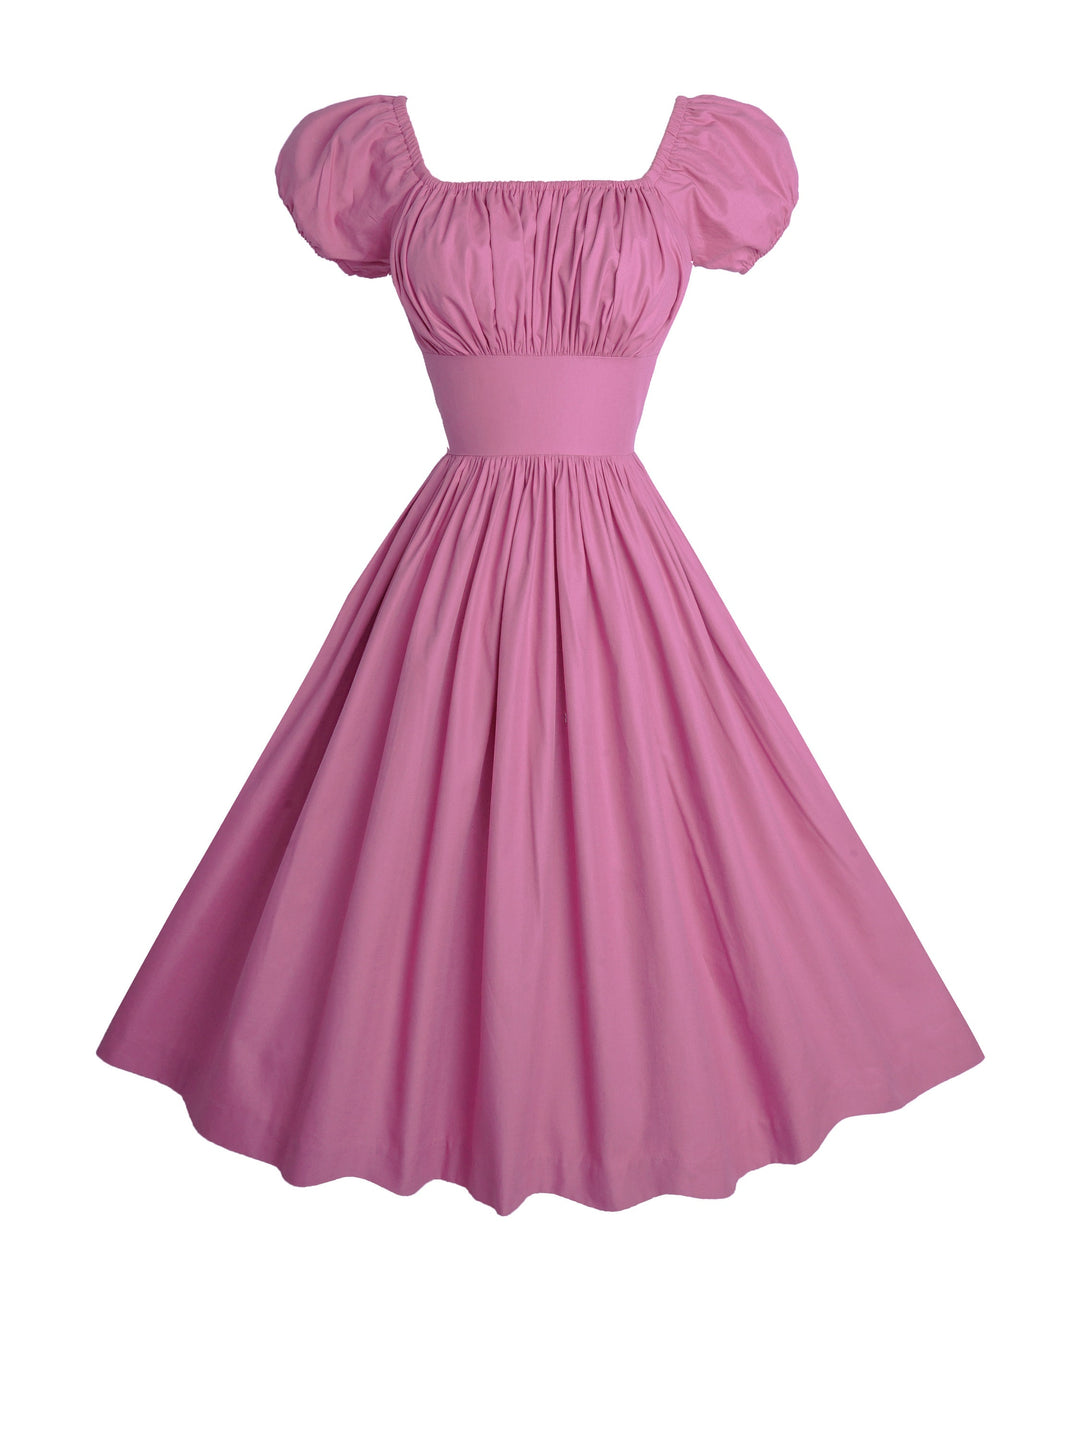 MTO - Loretta Dress in Mauve Rose Cotton